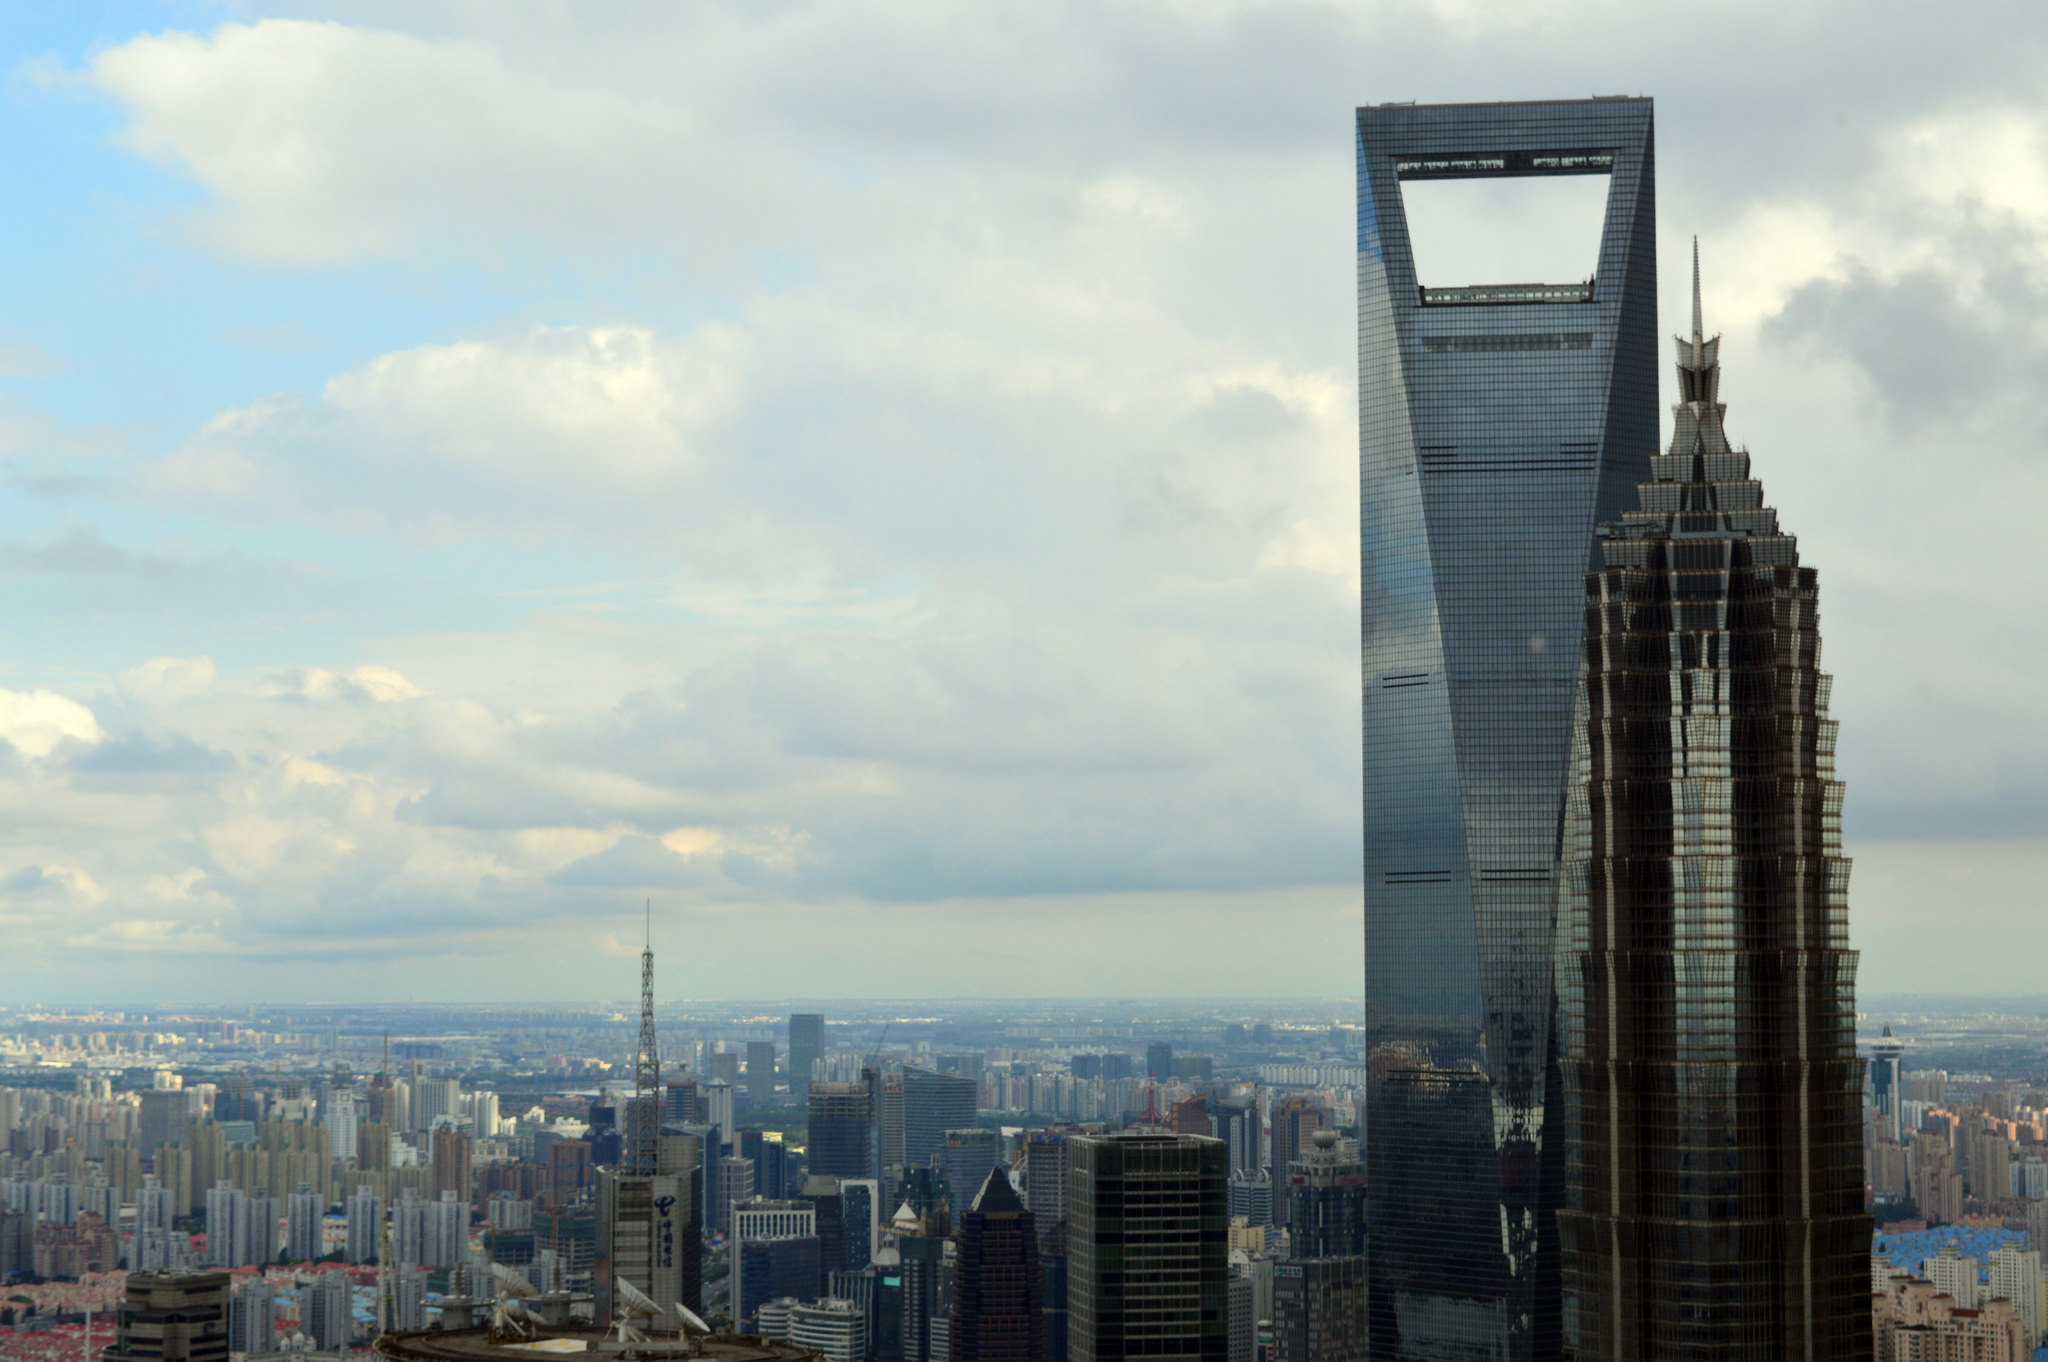  برج مركز شانغهاي المالي